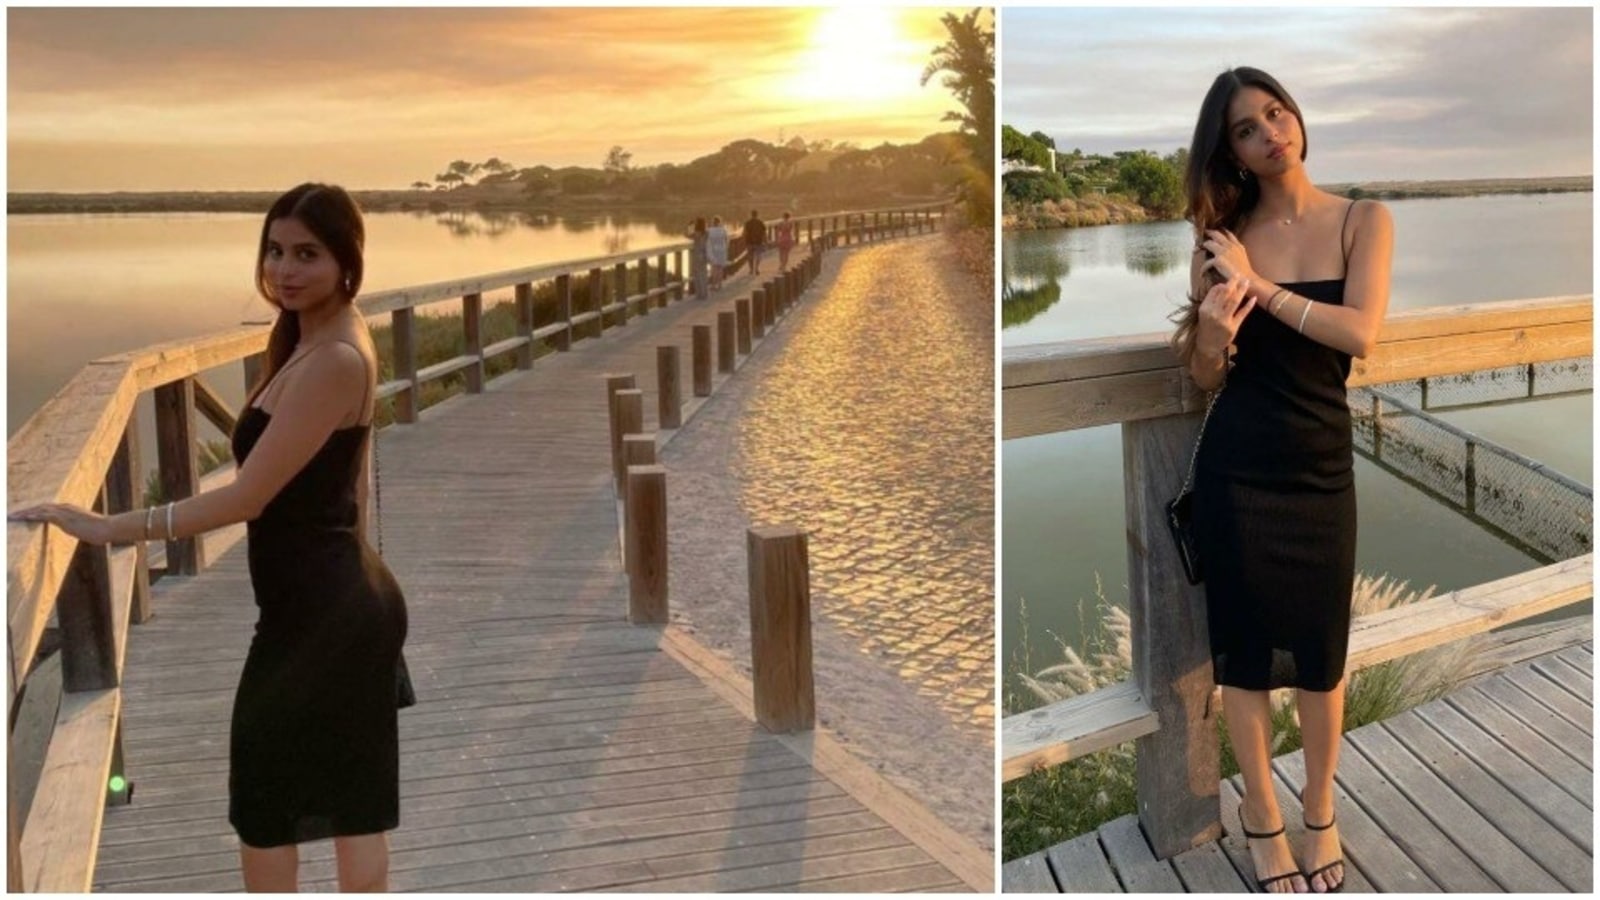 Filha de Shah Rukh Khan, Suhana Khan, posa com vestido preto à beira do lago, veja fotos de Portugal |  Bollywood